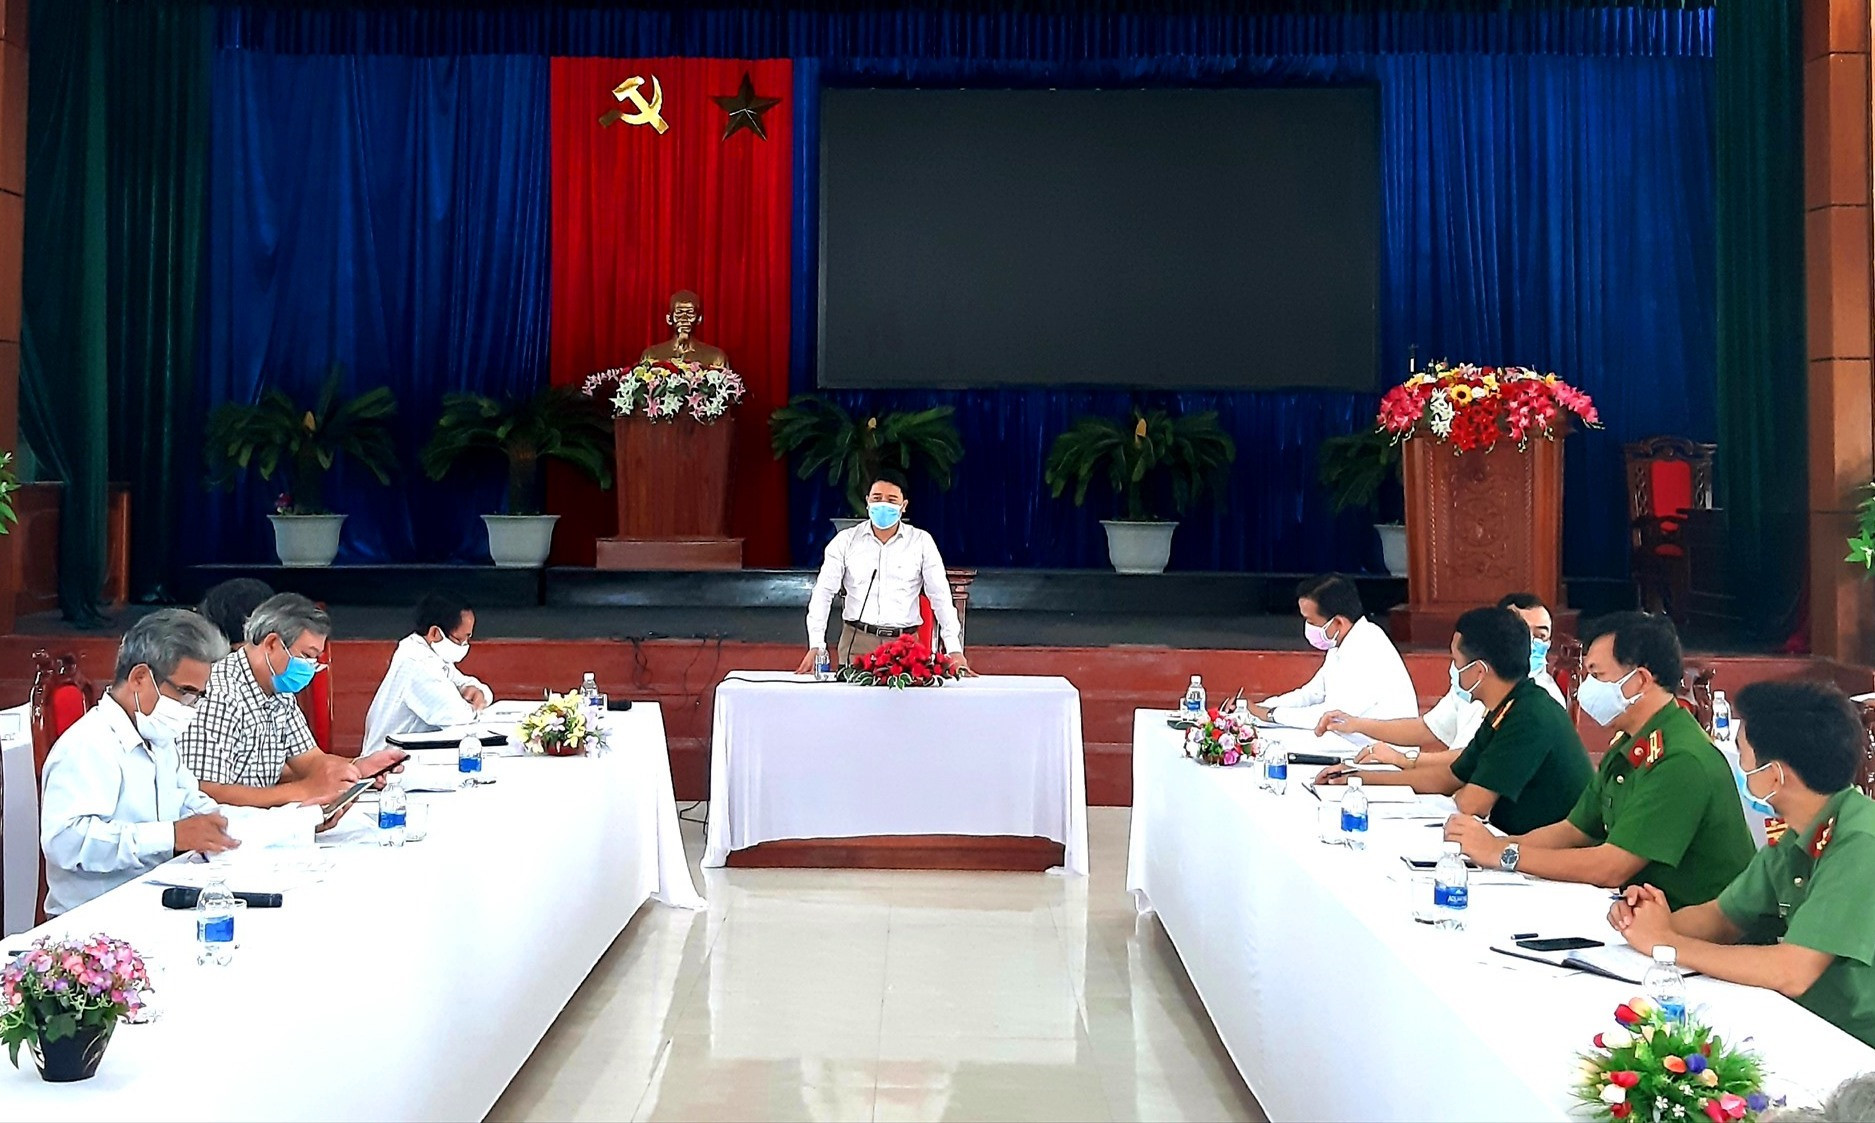 Phó Chủ tịch UBND tỉnh Trần Văn Tân phát biểu chỉ đạo tại cuộc làm việc với lãnh đạo huyện Quế Sơn vào sáng nay 6.8. Ảnh: V.S